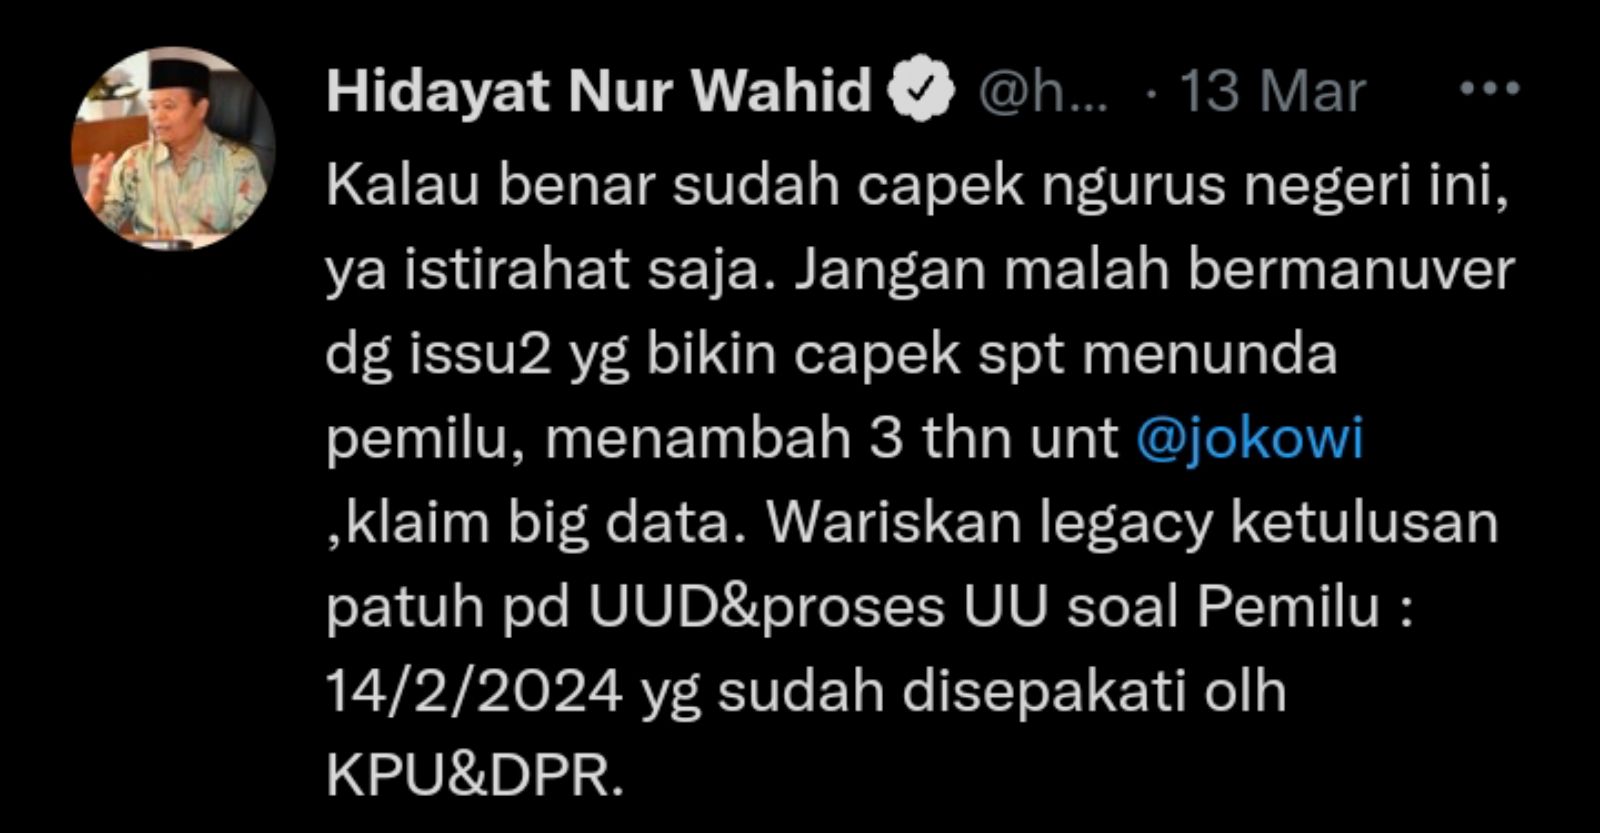 Tweet Hidayat Nur Wahid